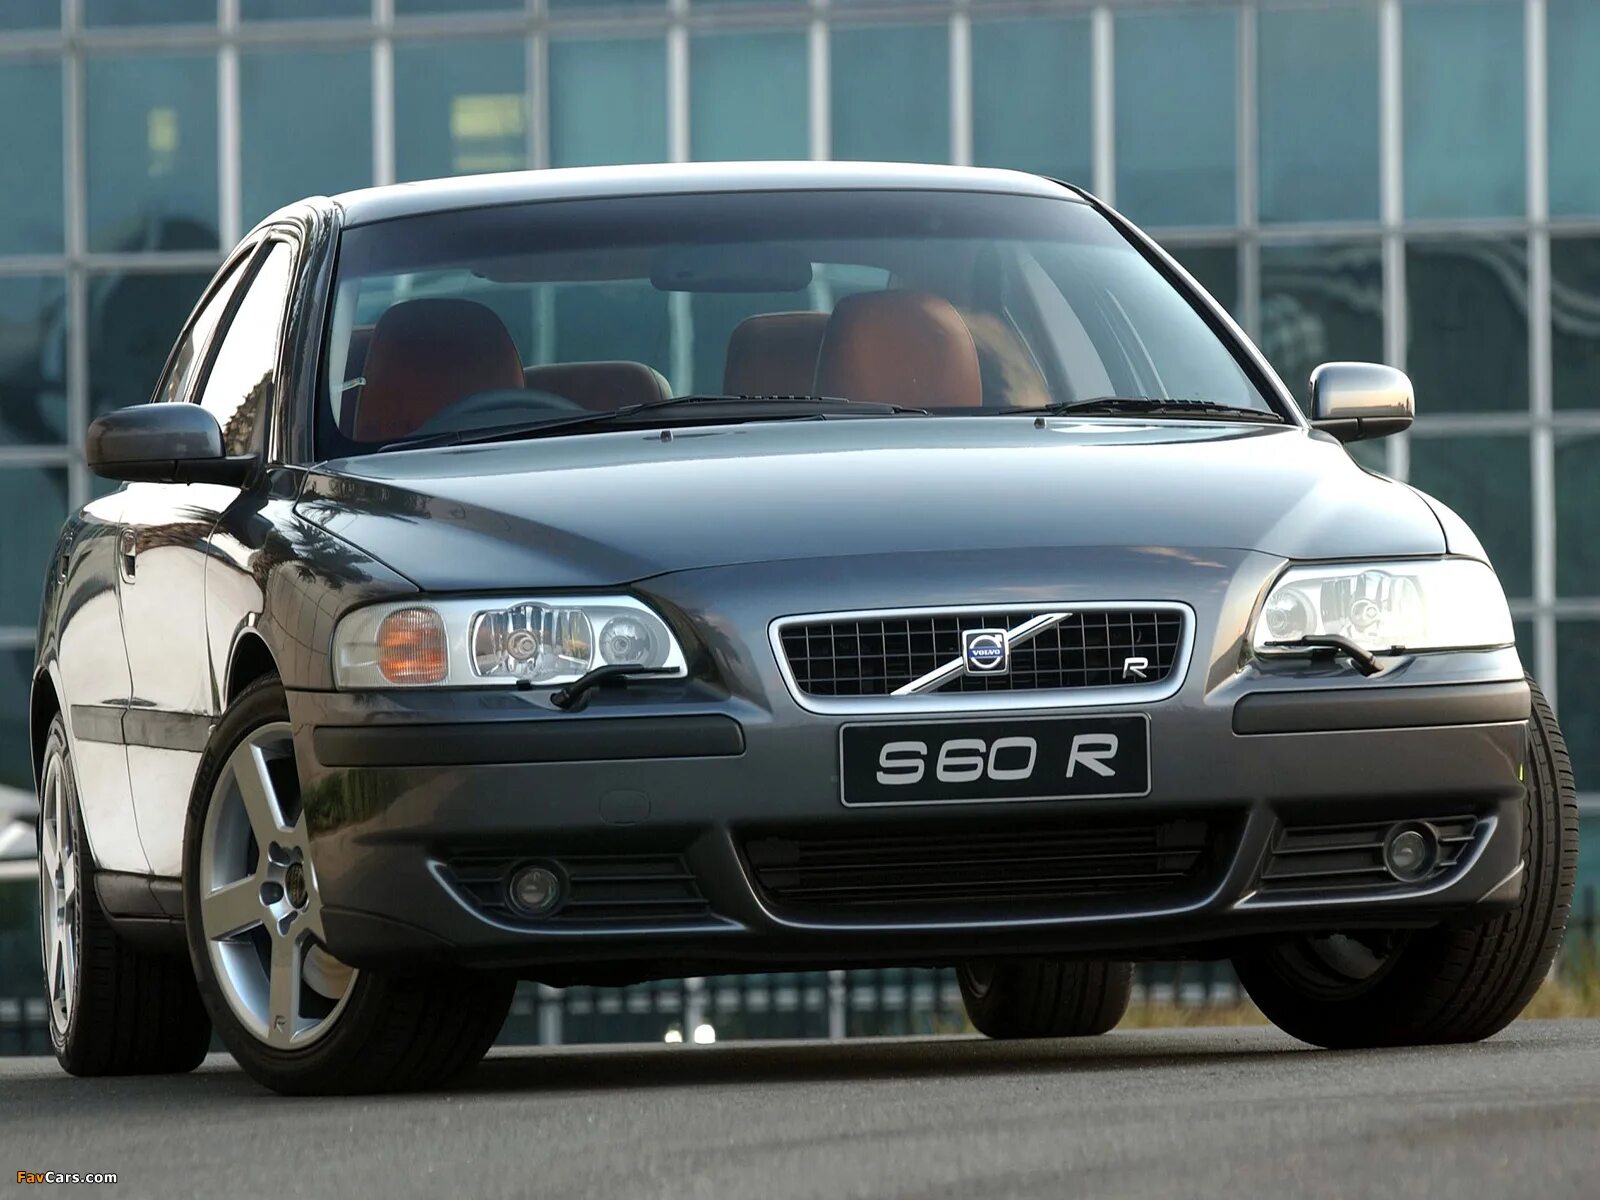 Volvo s60 2006. Volvo s60r. Volvo s60 r 2004. Volvo s60r 2008. Volvo s60r 2007.